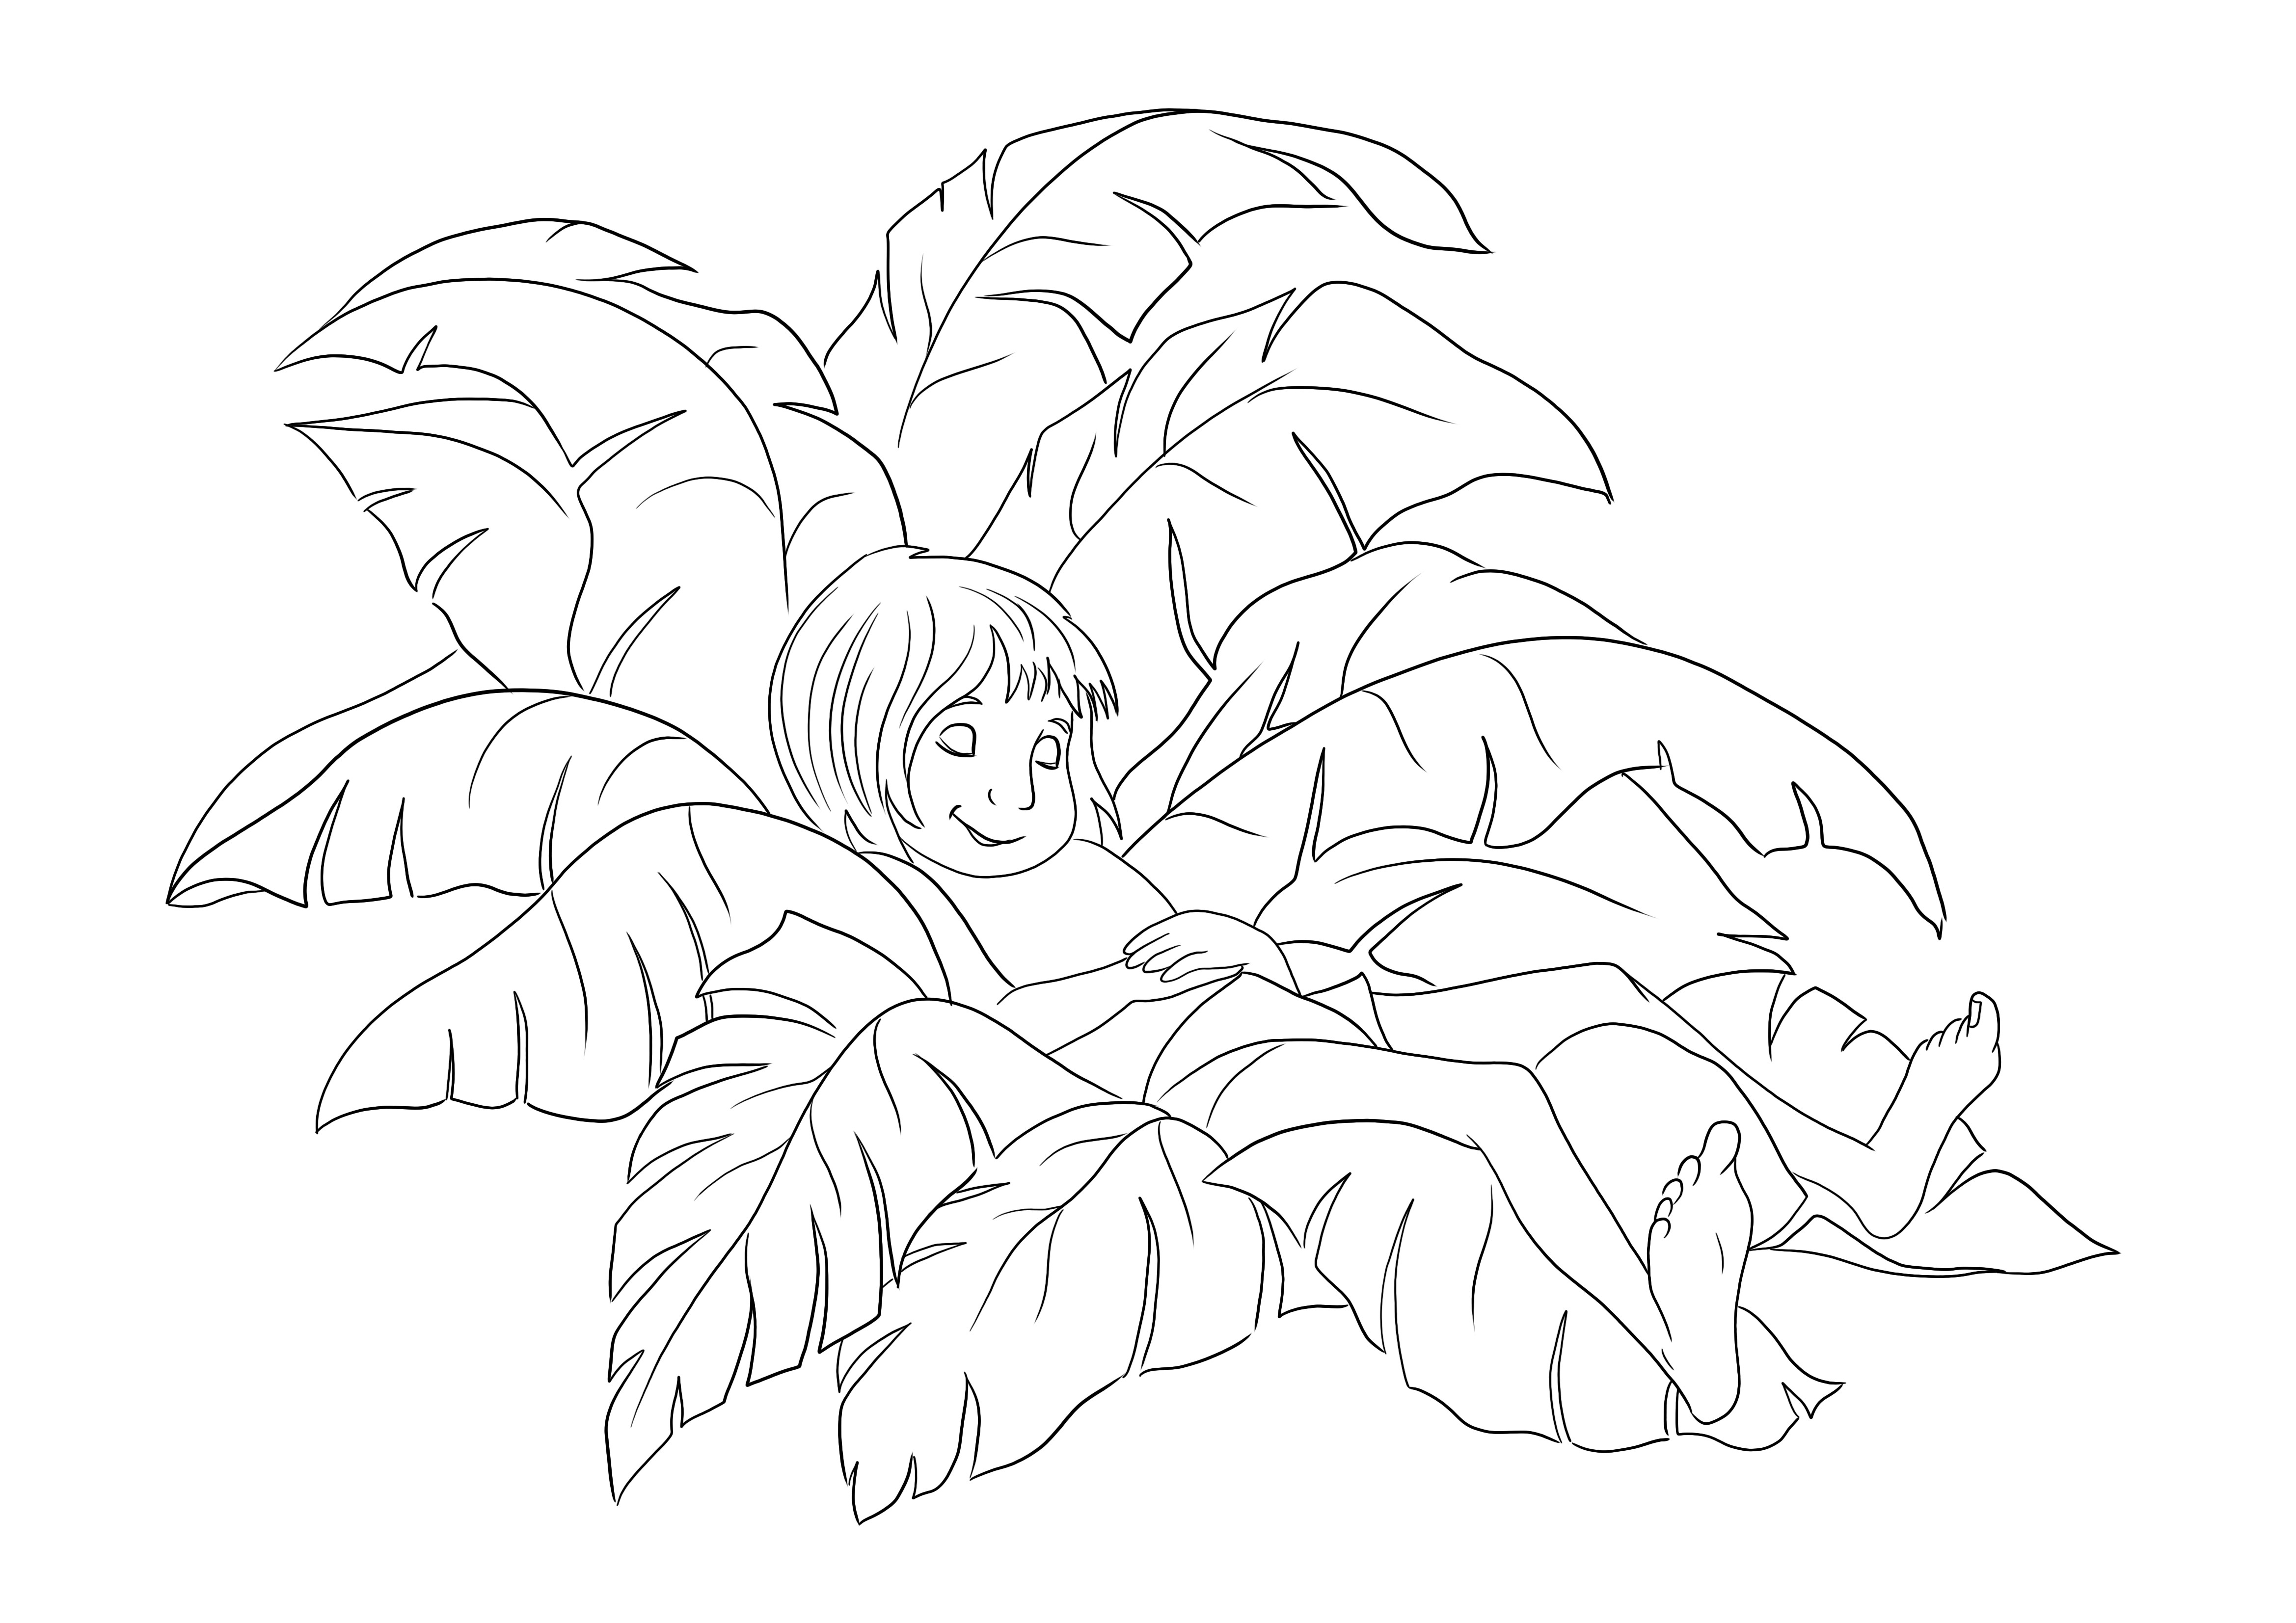 Un dibujo fácil para colorear e imprimir de Mowgli durmiendo en hojas de palma para uso gratuito